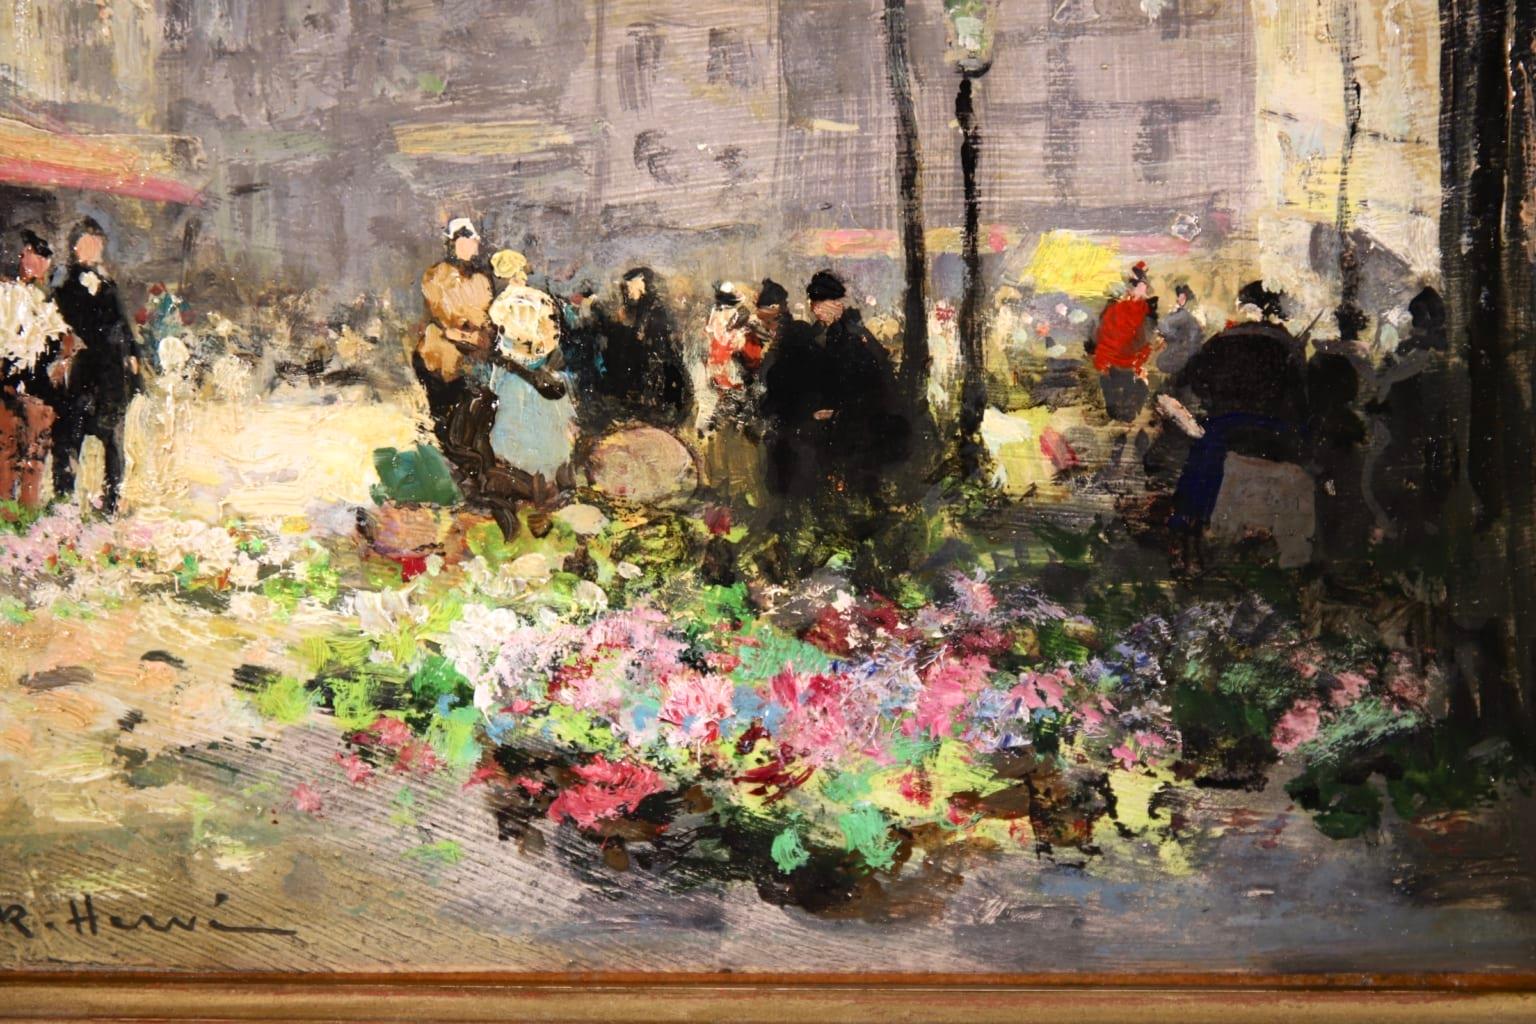 Flower Market - Impressionist Oil, Figures in City Landscape by Jules Rene Herve 4